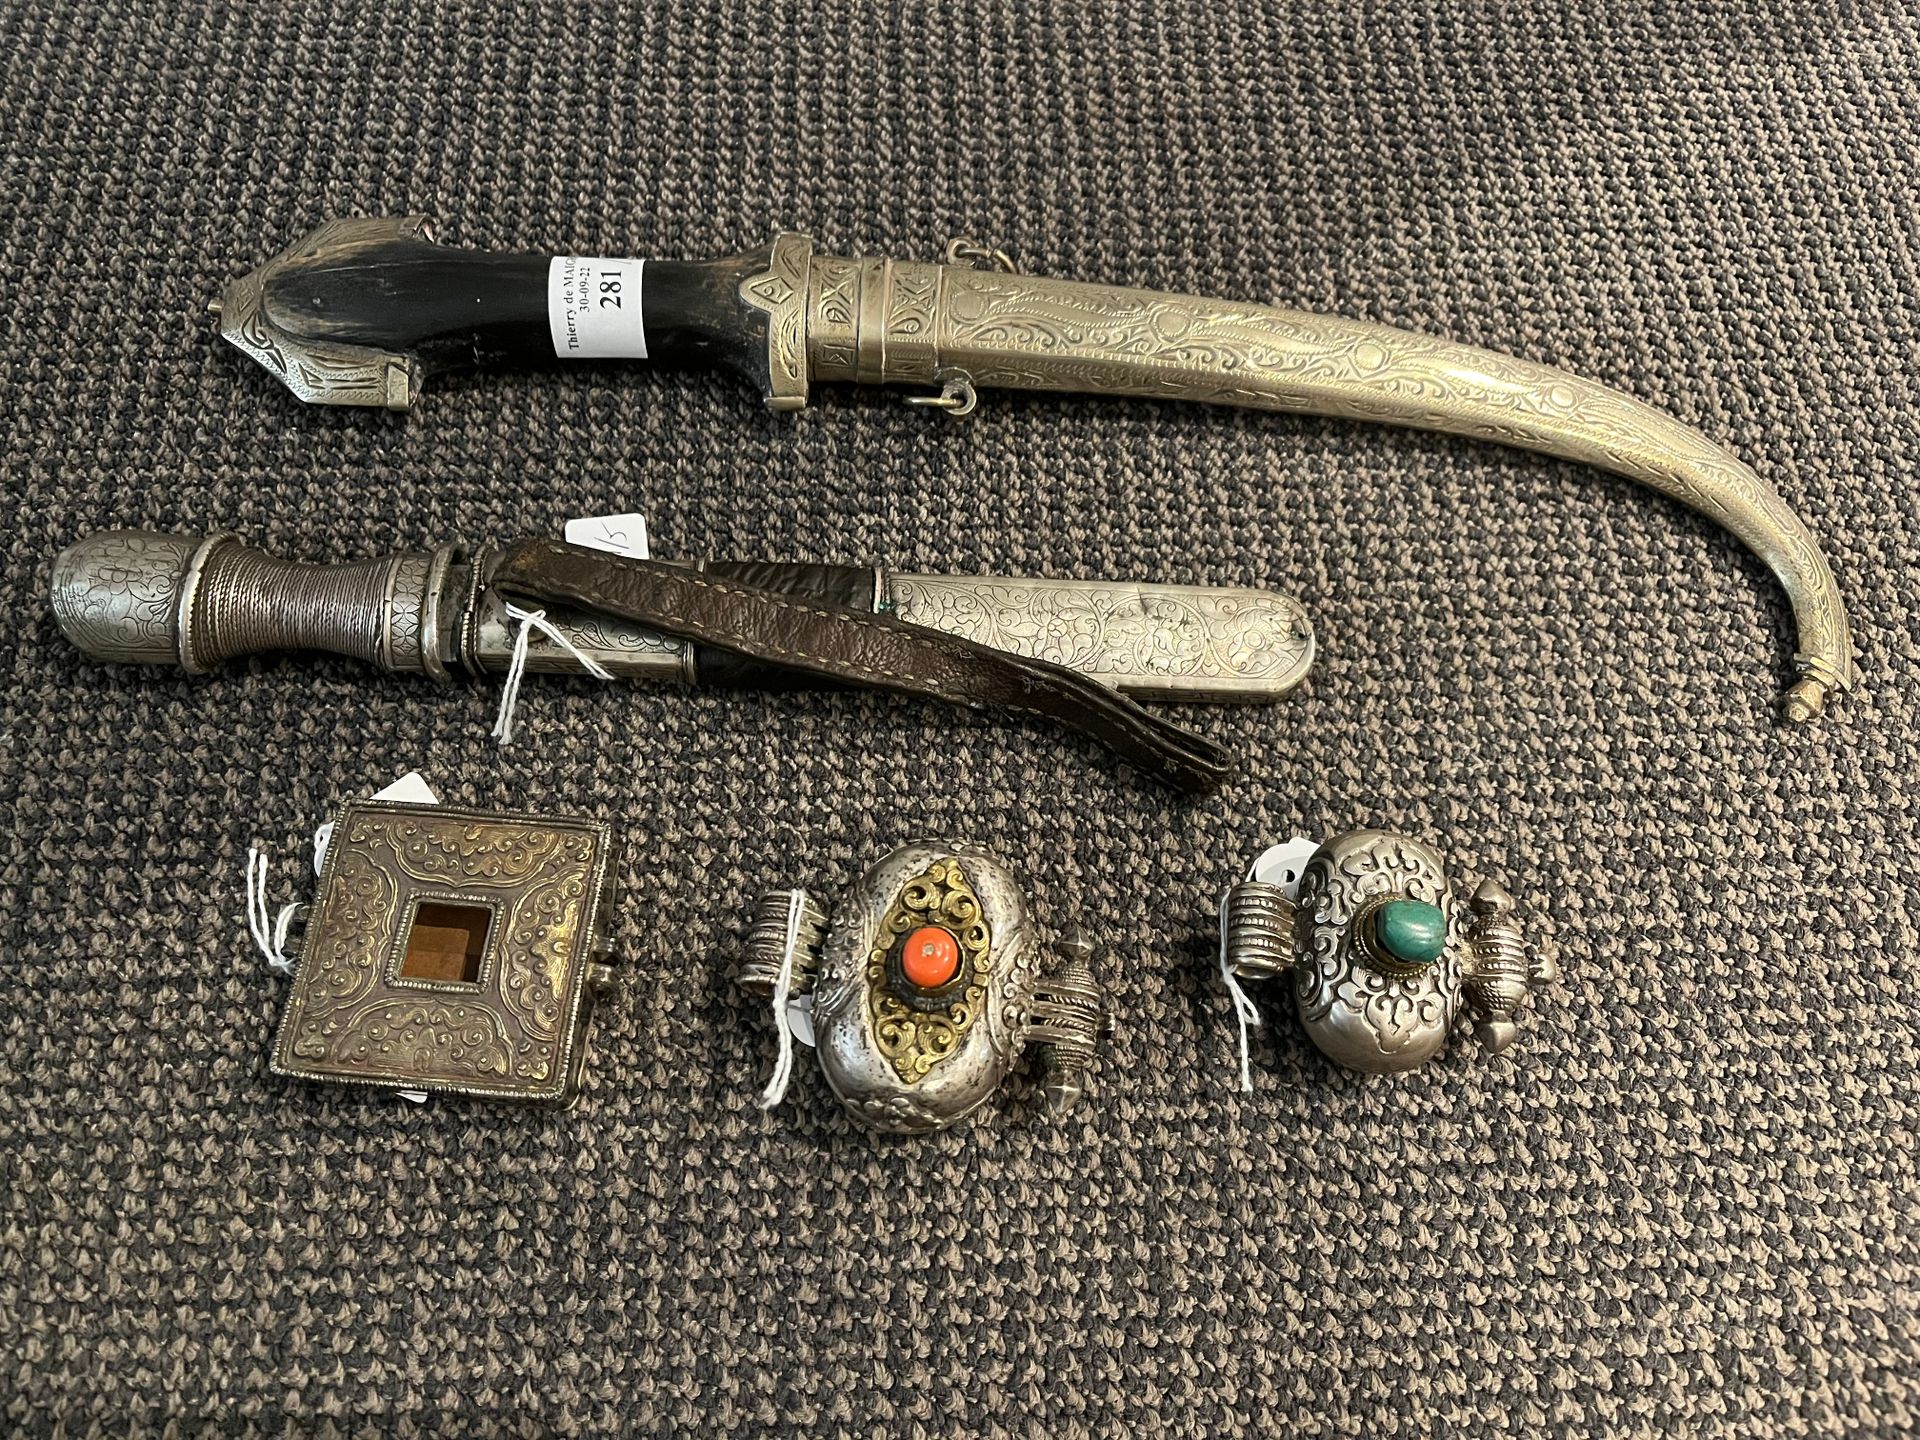 Null 喜马拉雅物品套装
喜马拉雅，19 - 20世纪 本拍品包括三个低标题的银和vermeil的灵位盒，装饰有珊瑚和绿色石头，还有一把匕首，其手柄上覆盖着银&hellip;